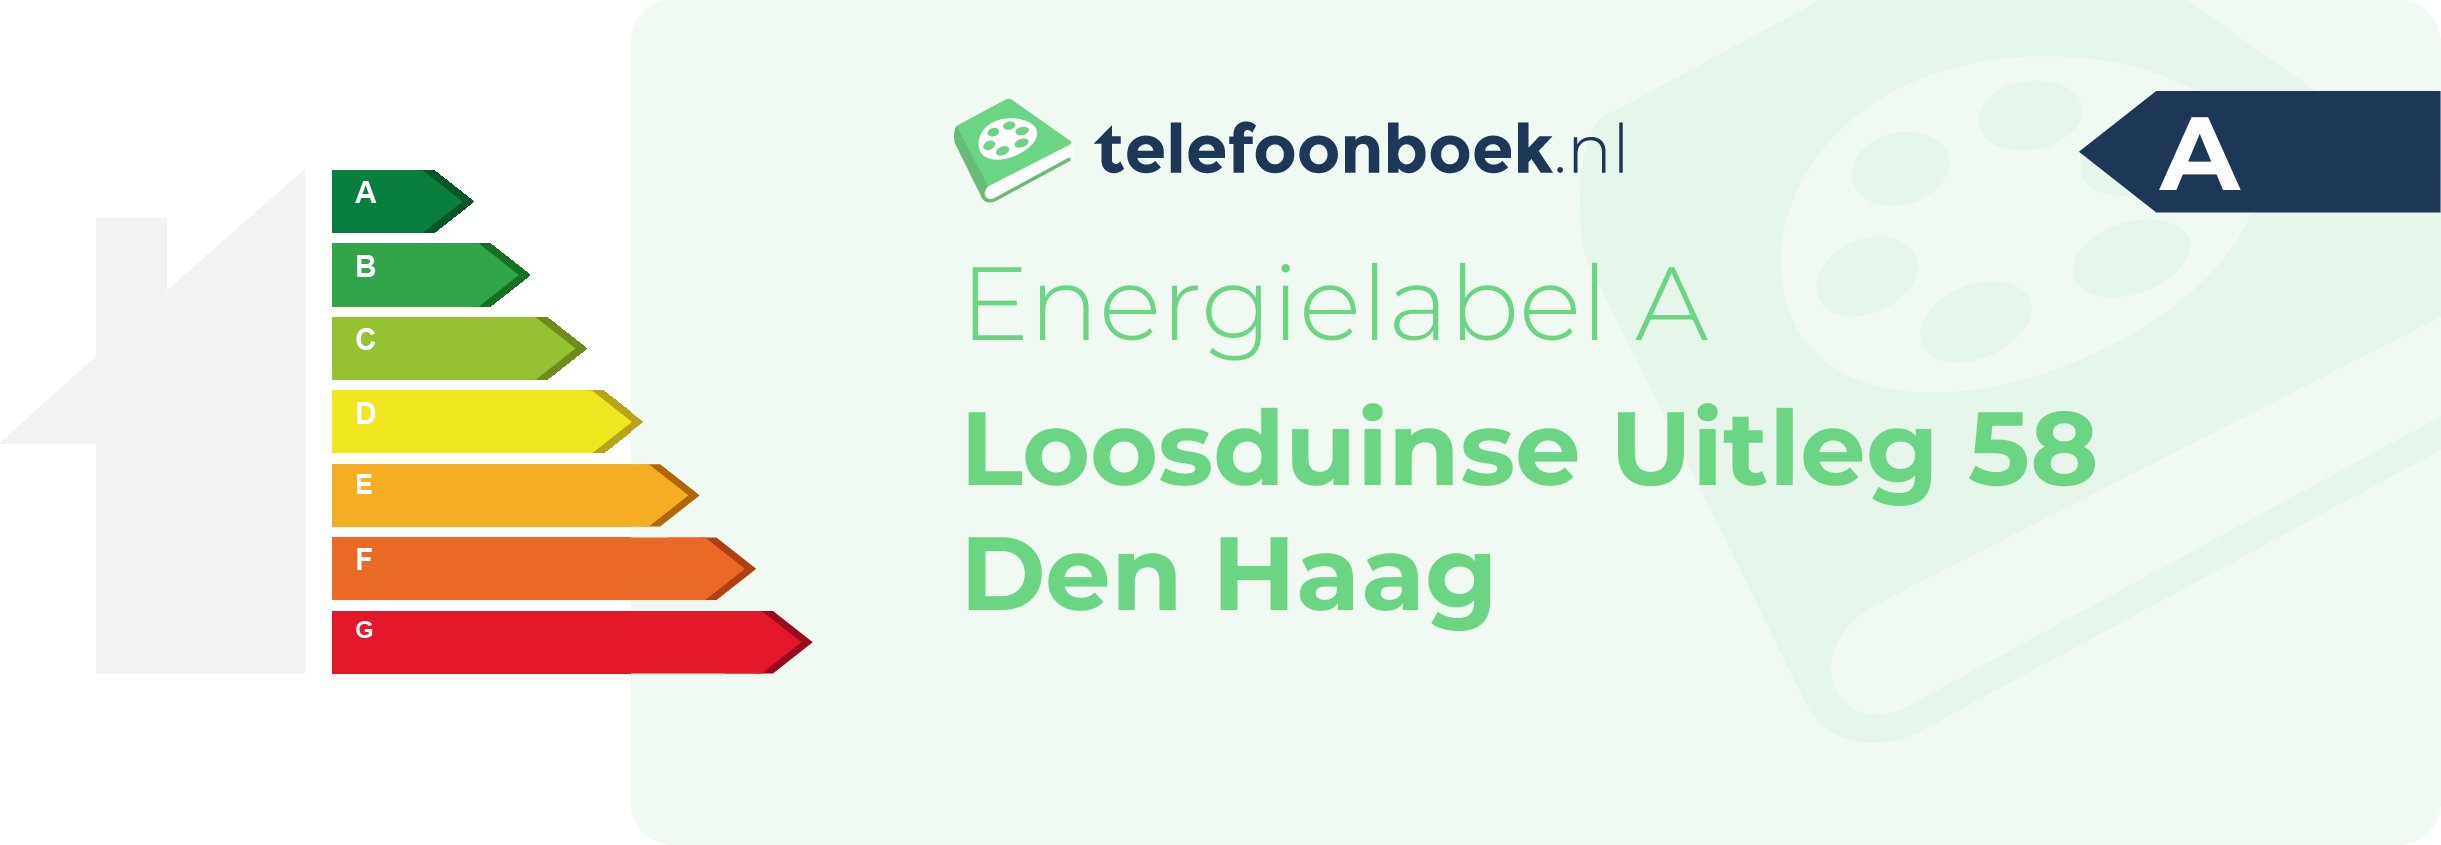 Energielabel Loosduinse Uitleg 58 Den Haag